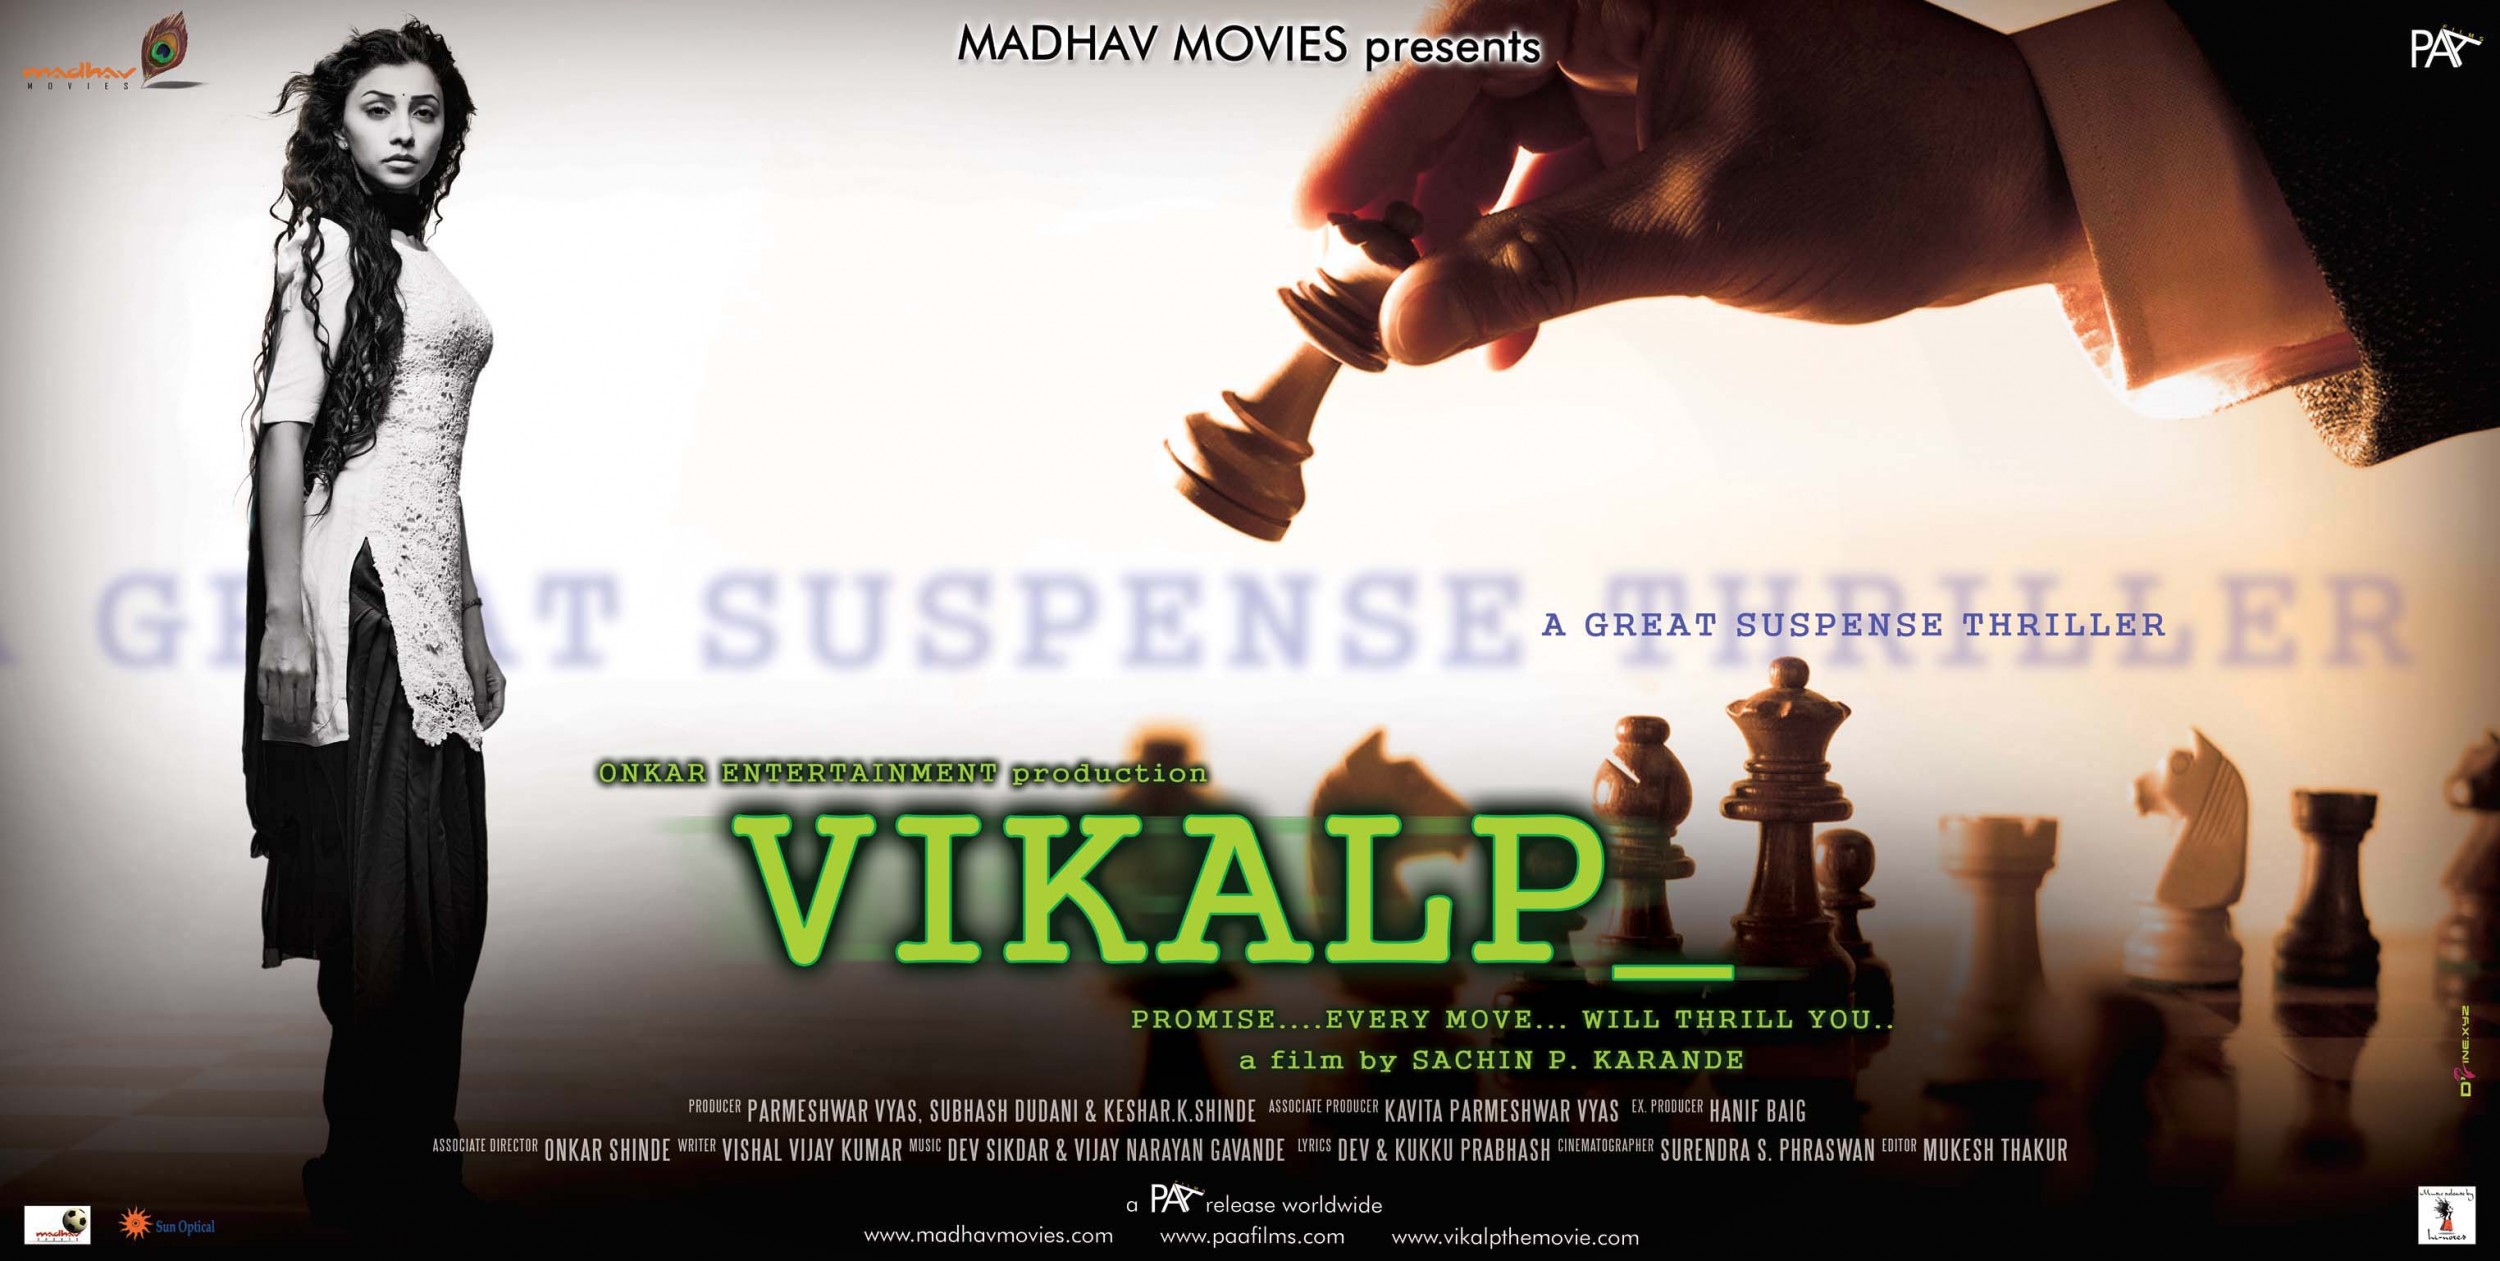 Mega Sized Movie Poster Image for Vikalp (#7 of 8)